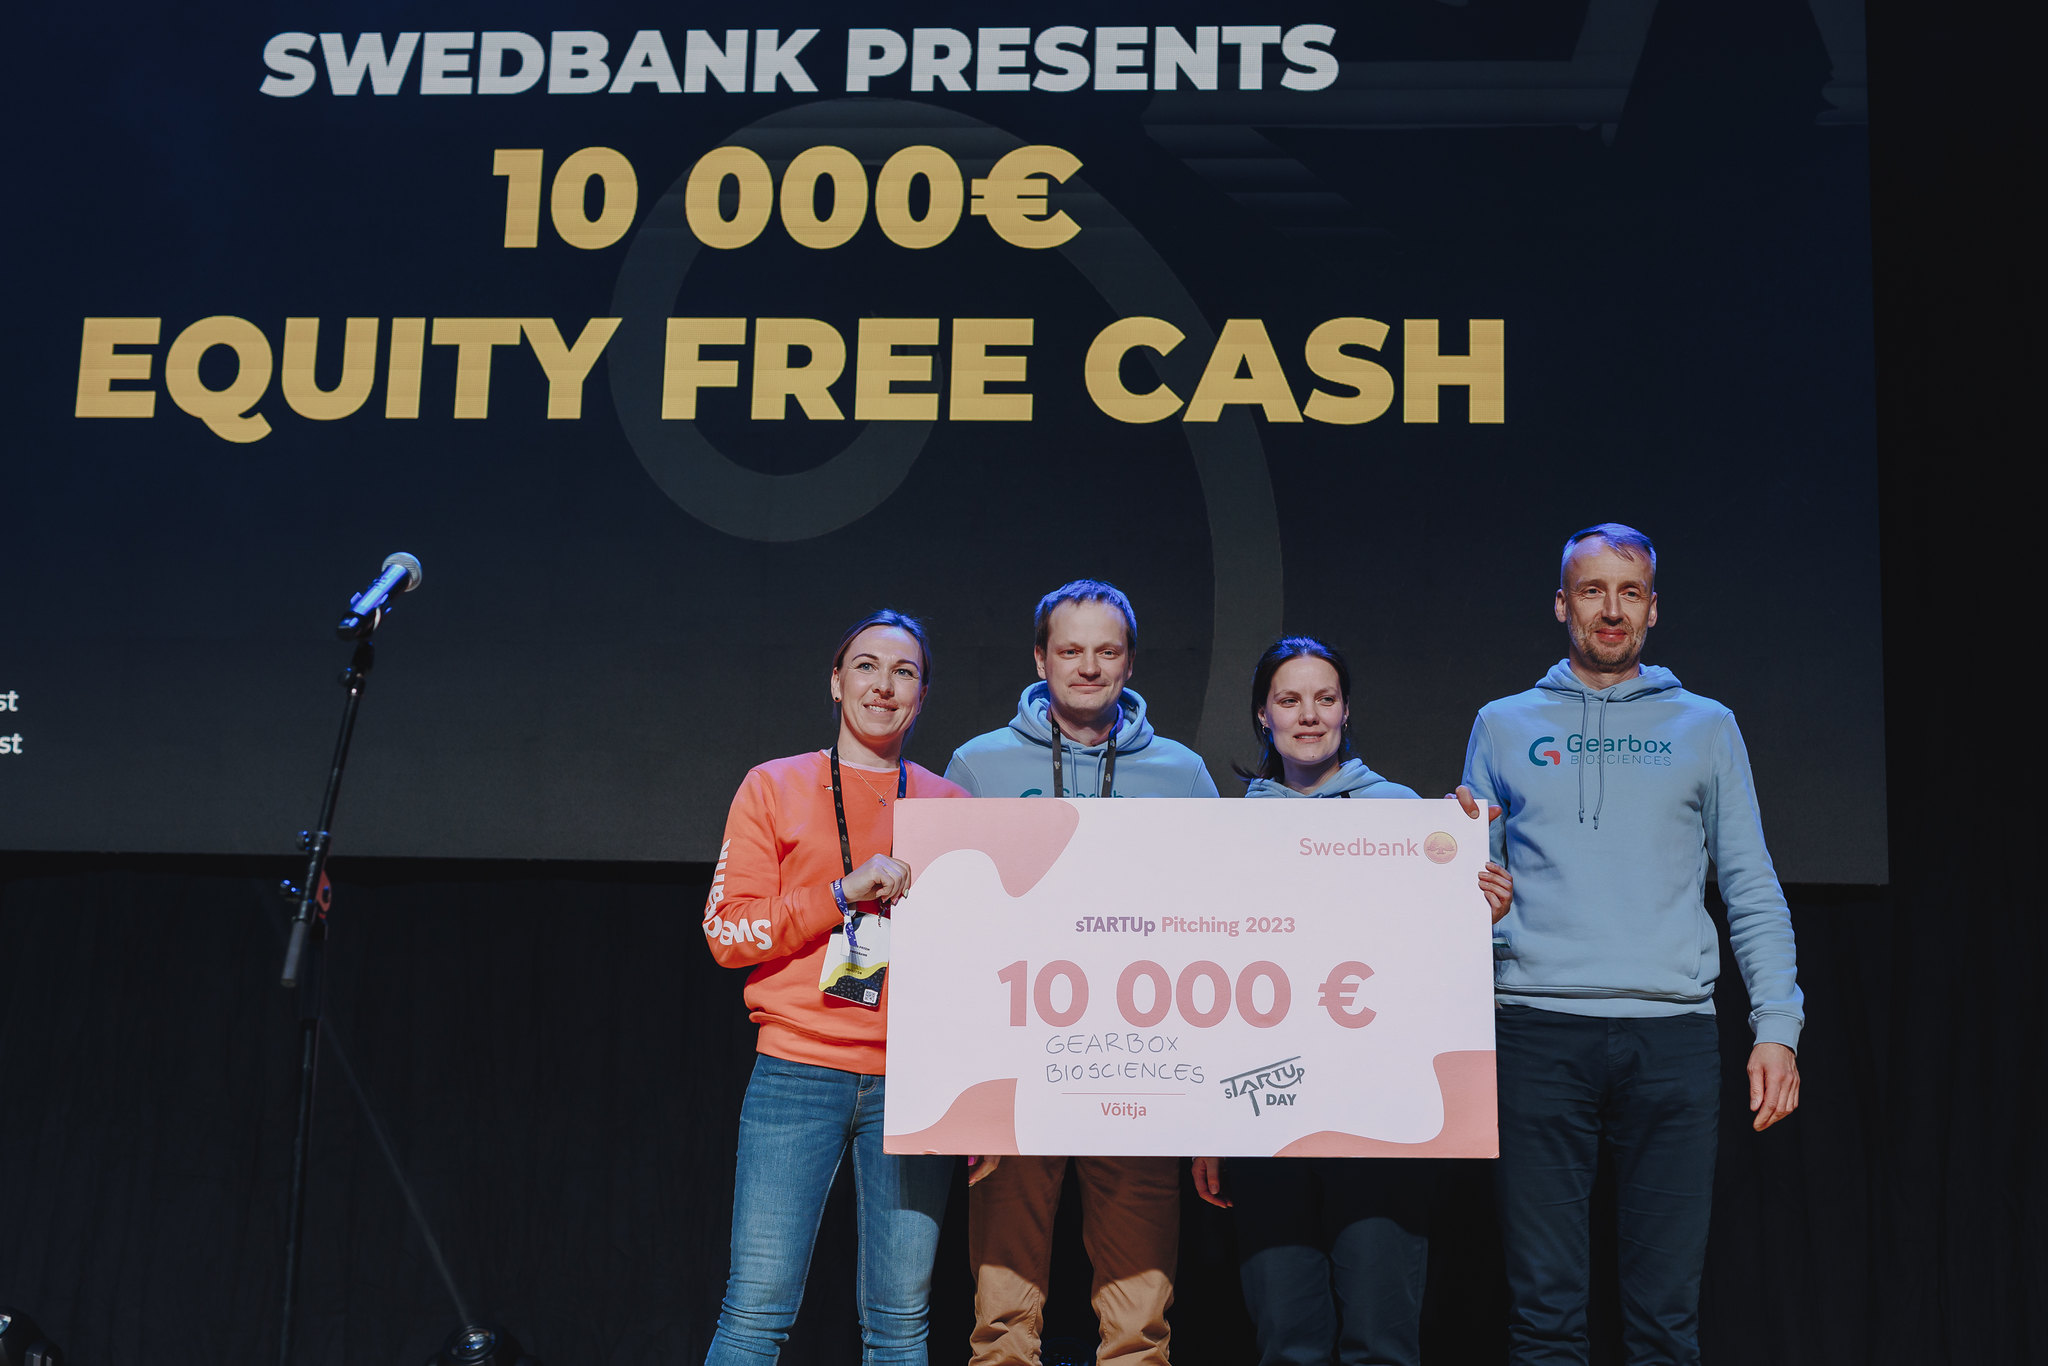 Gearbox Biosciences выиграл приз Swedbank в размере 10 000 евро